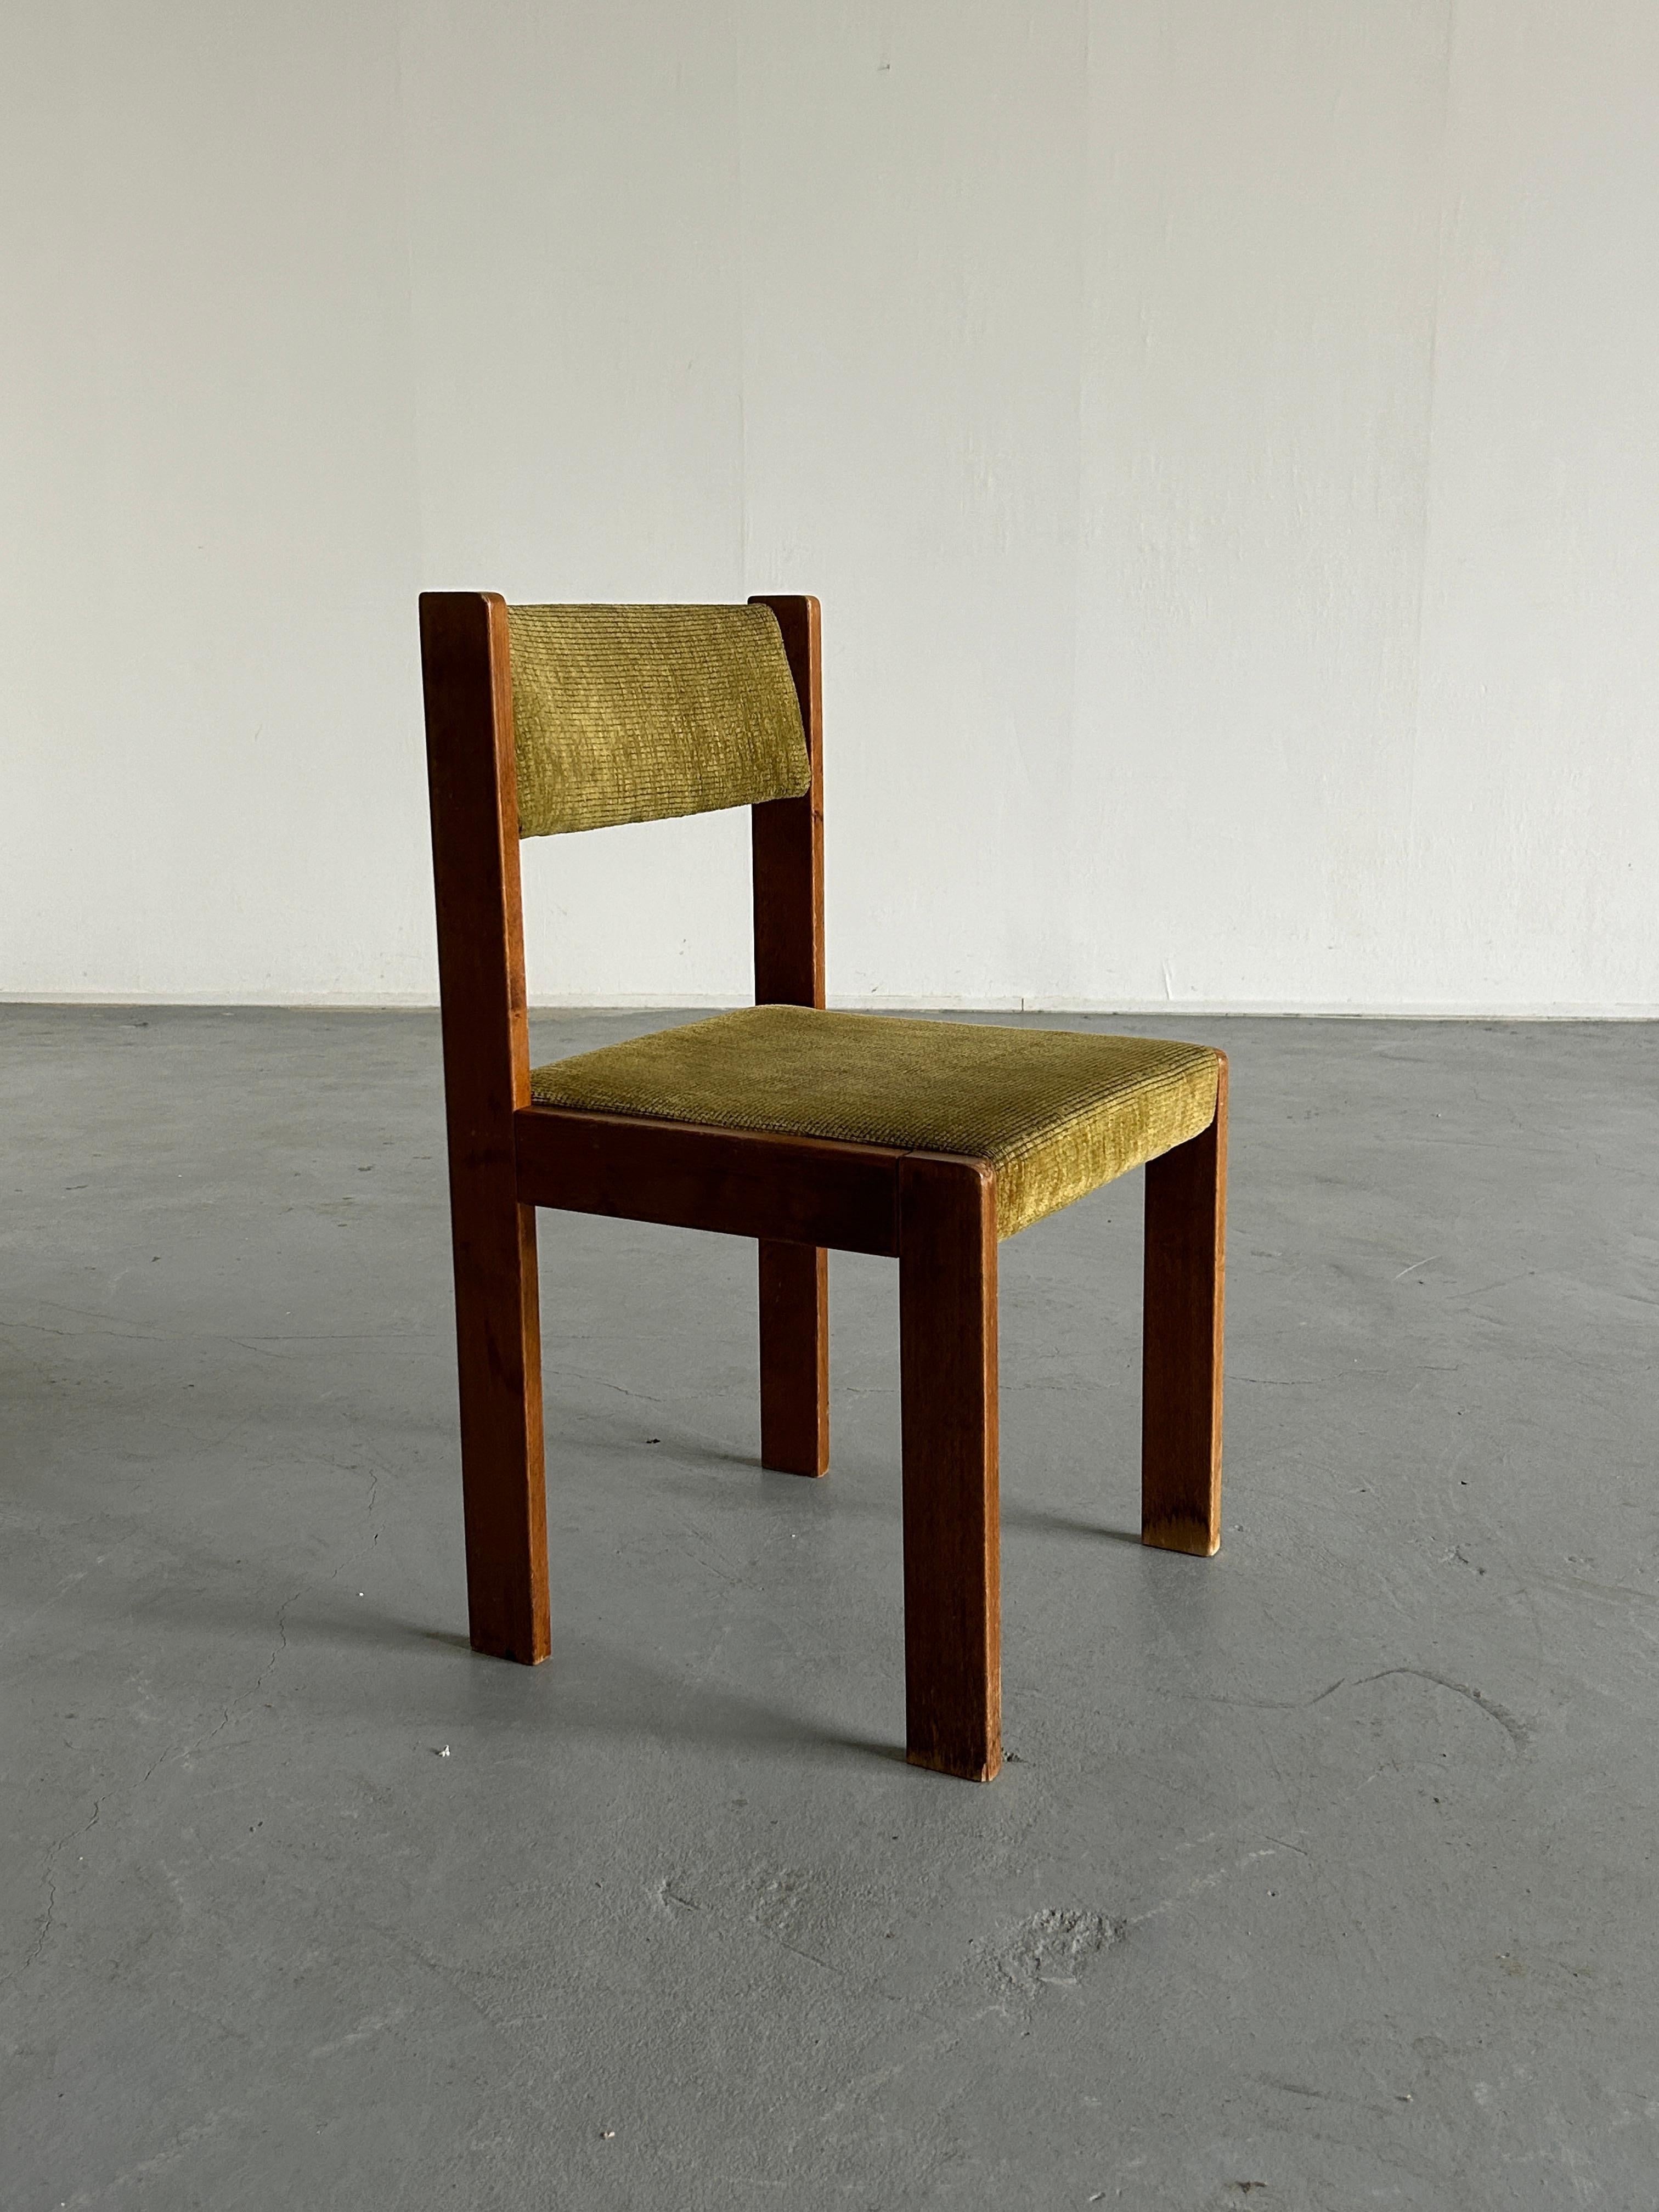 Austrian Mid-Century Modern Constructivist Dining Chair by Wiesner Hager, 1960s Austria